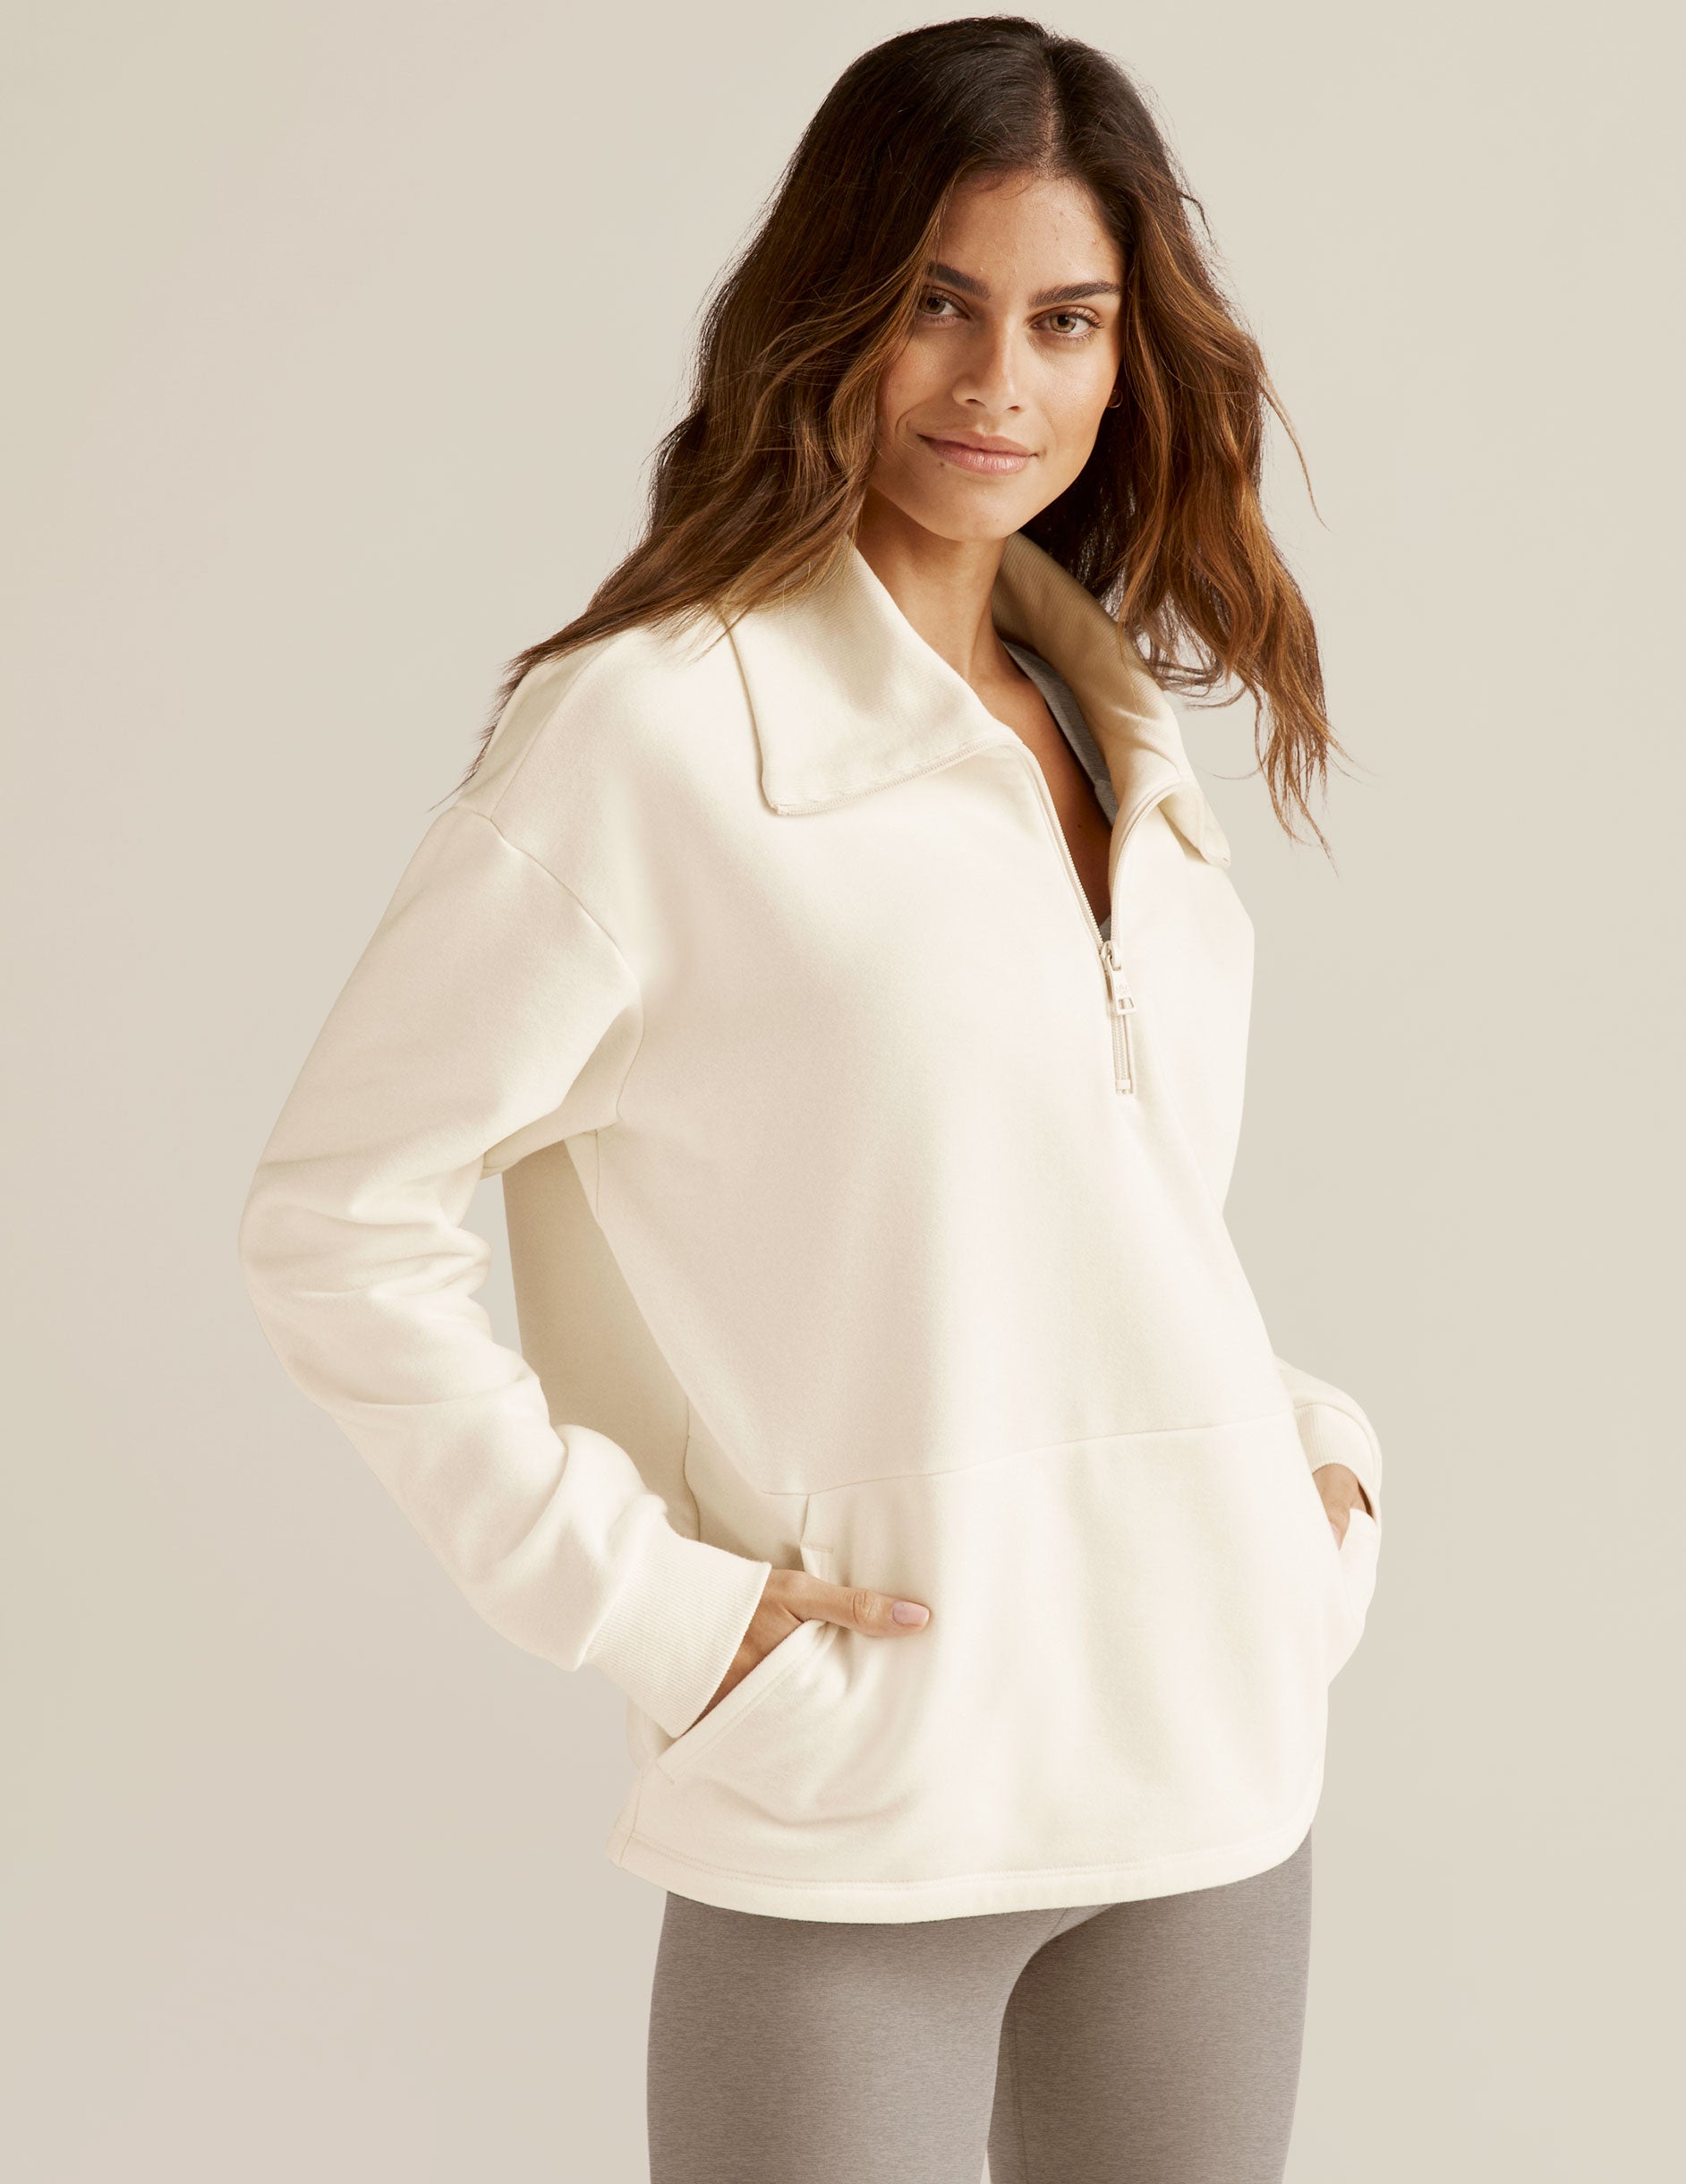 white quarter-zip fleece pullover. 